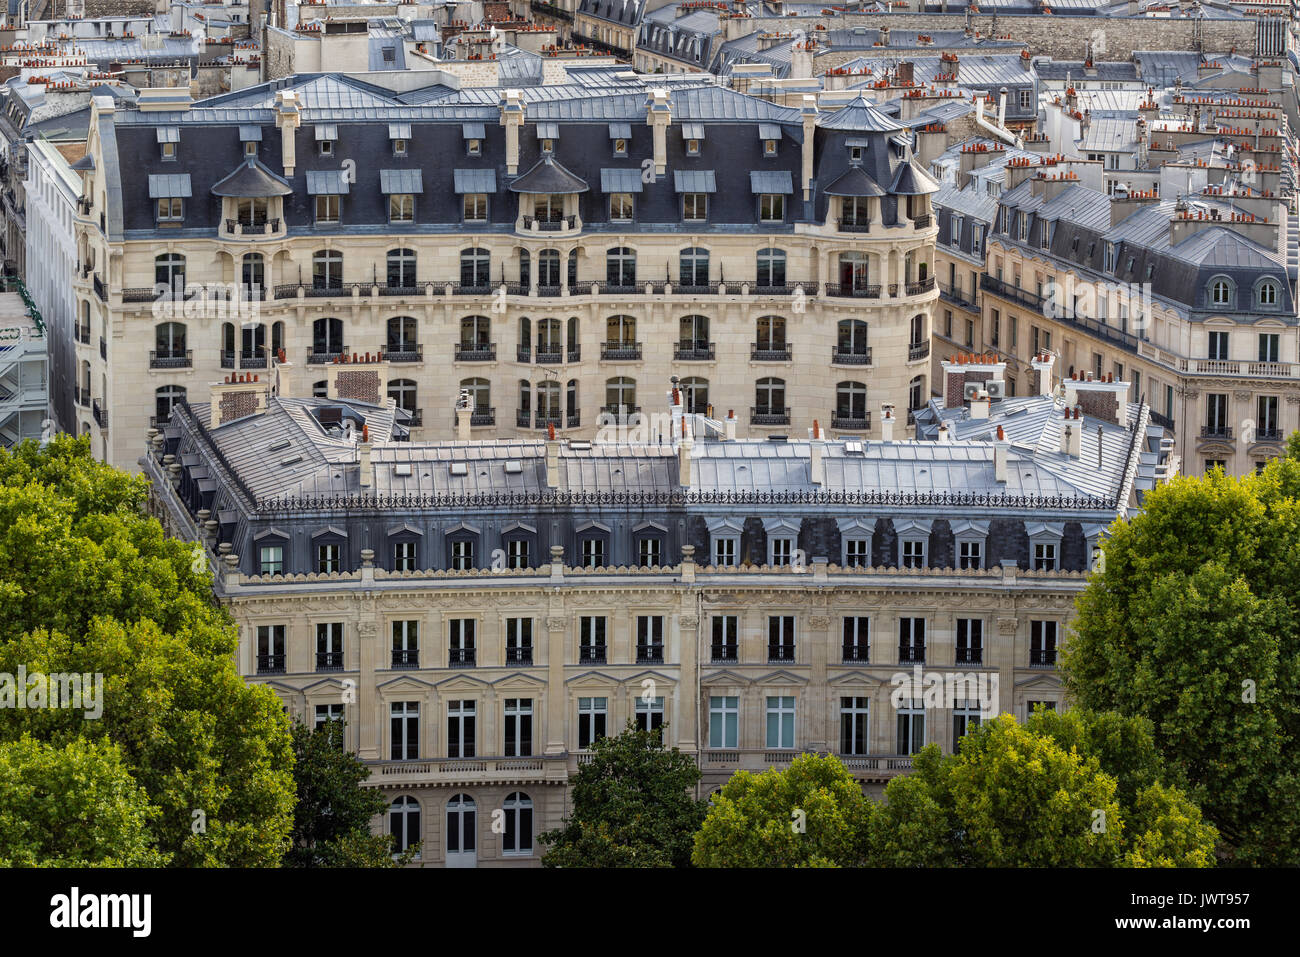 Immeuble haussmannien façades et toitures à la Mansart en été. 16ème arrondissement de Paris. France Banque D'Images